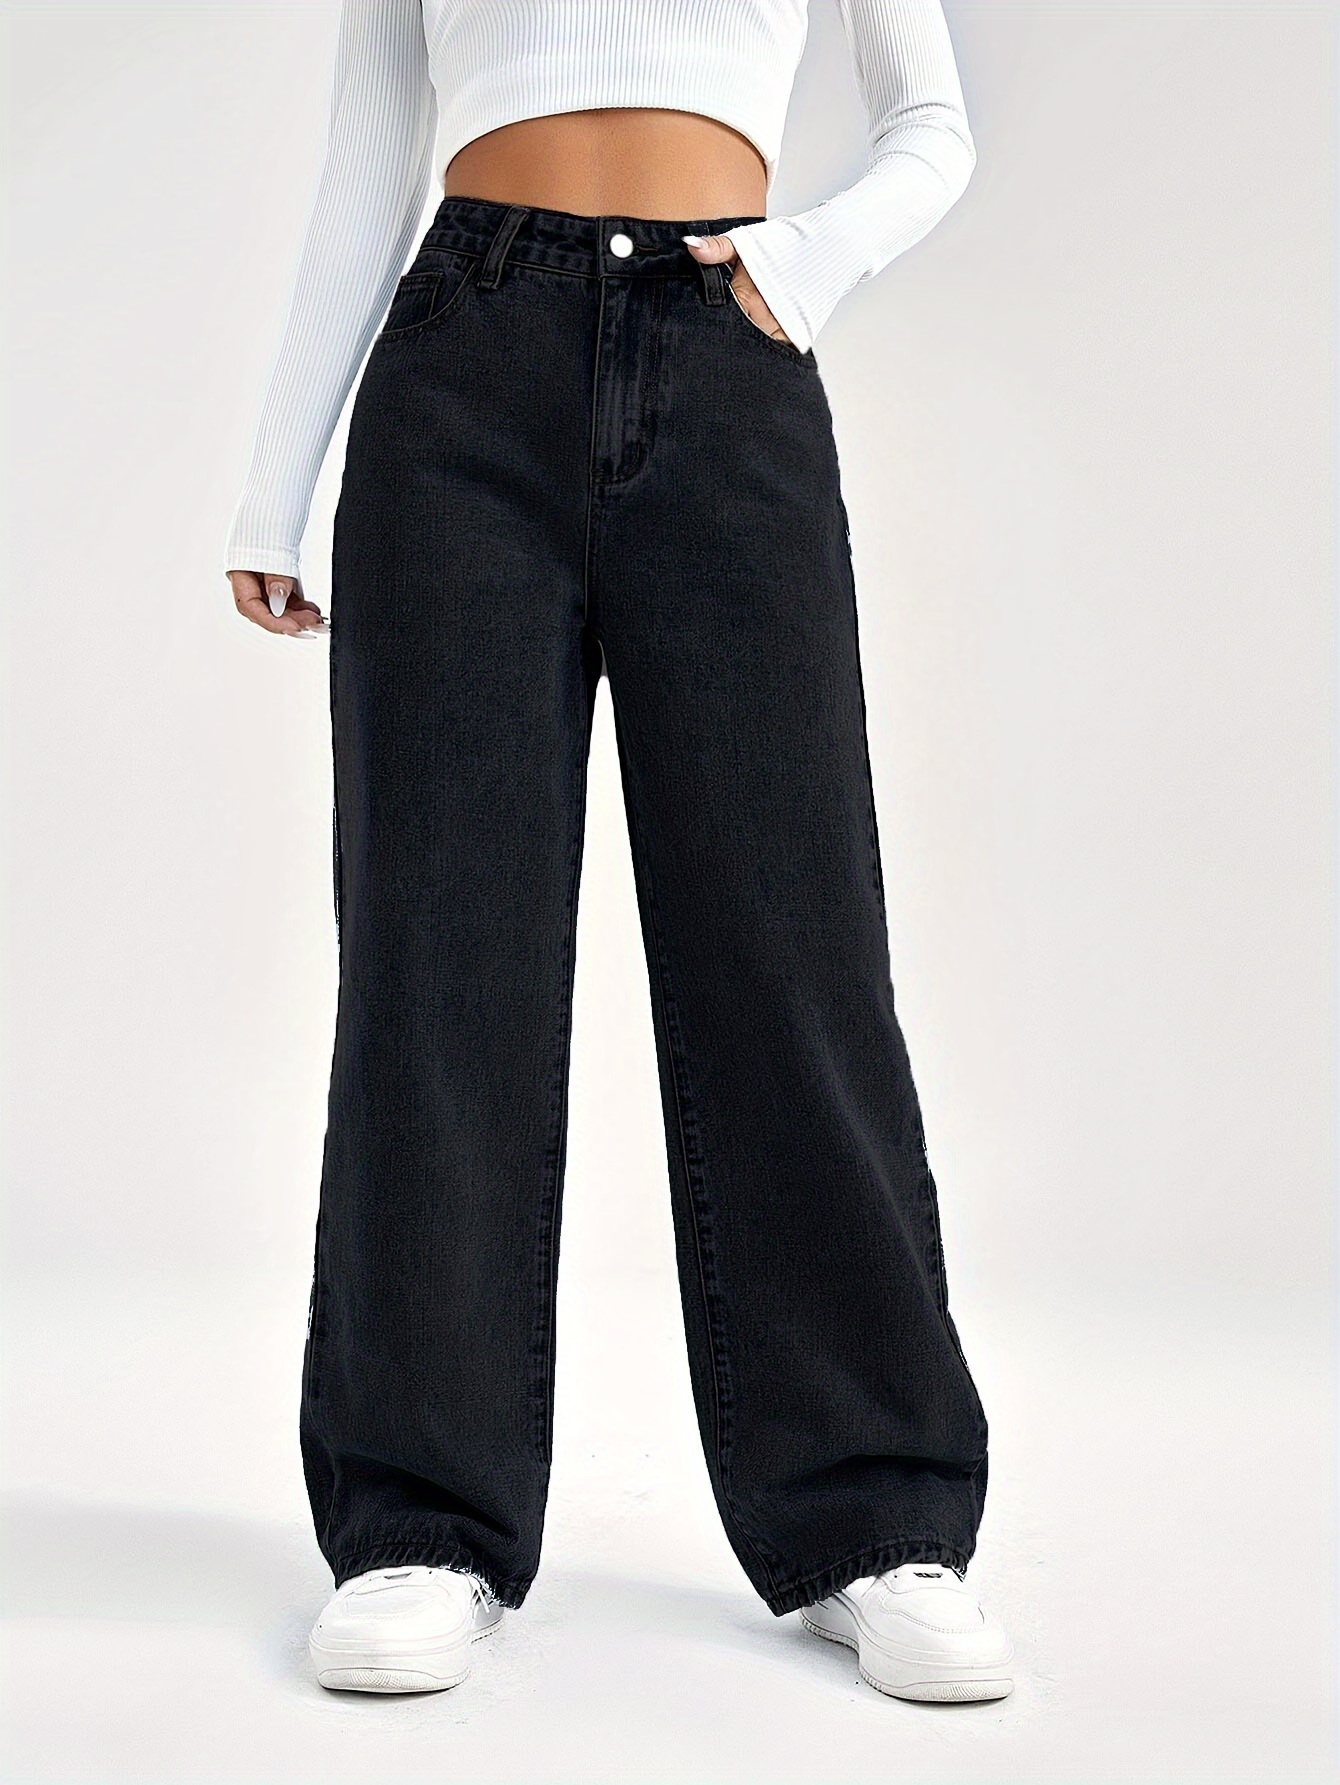 Acercamiento De Una Mujer Con Jeans Negros. Mujer Con Pantalones Negros  Imagen de archivo - Imagen de hermoso, delgado: 278486413